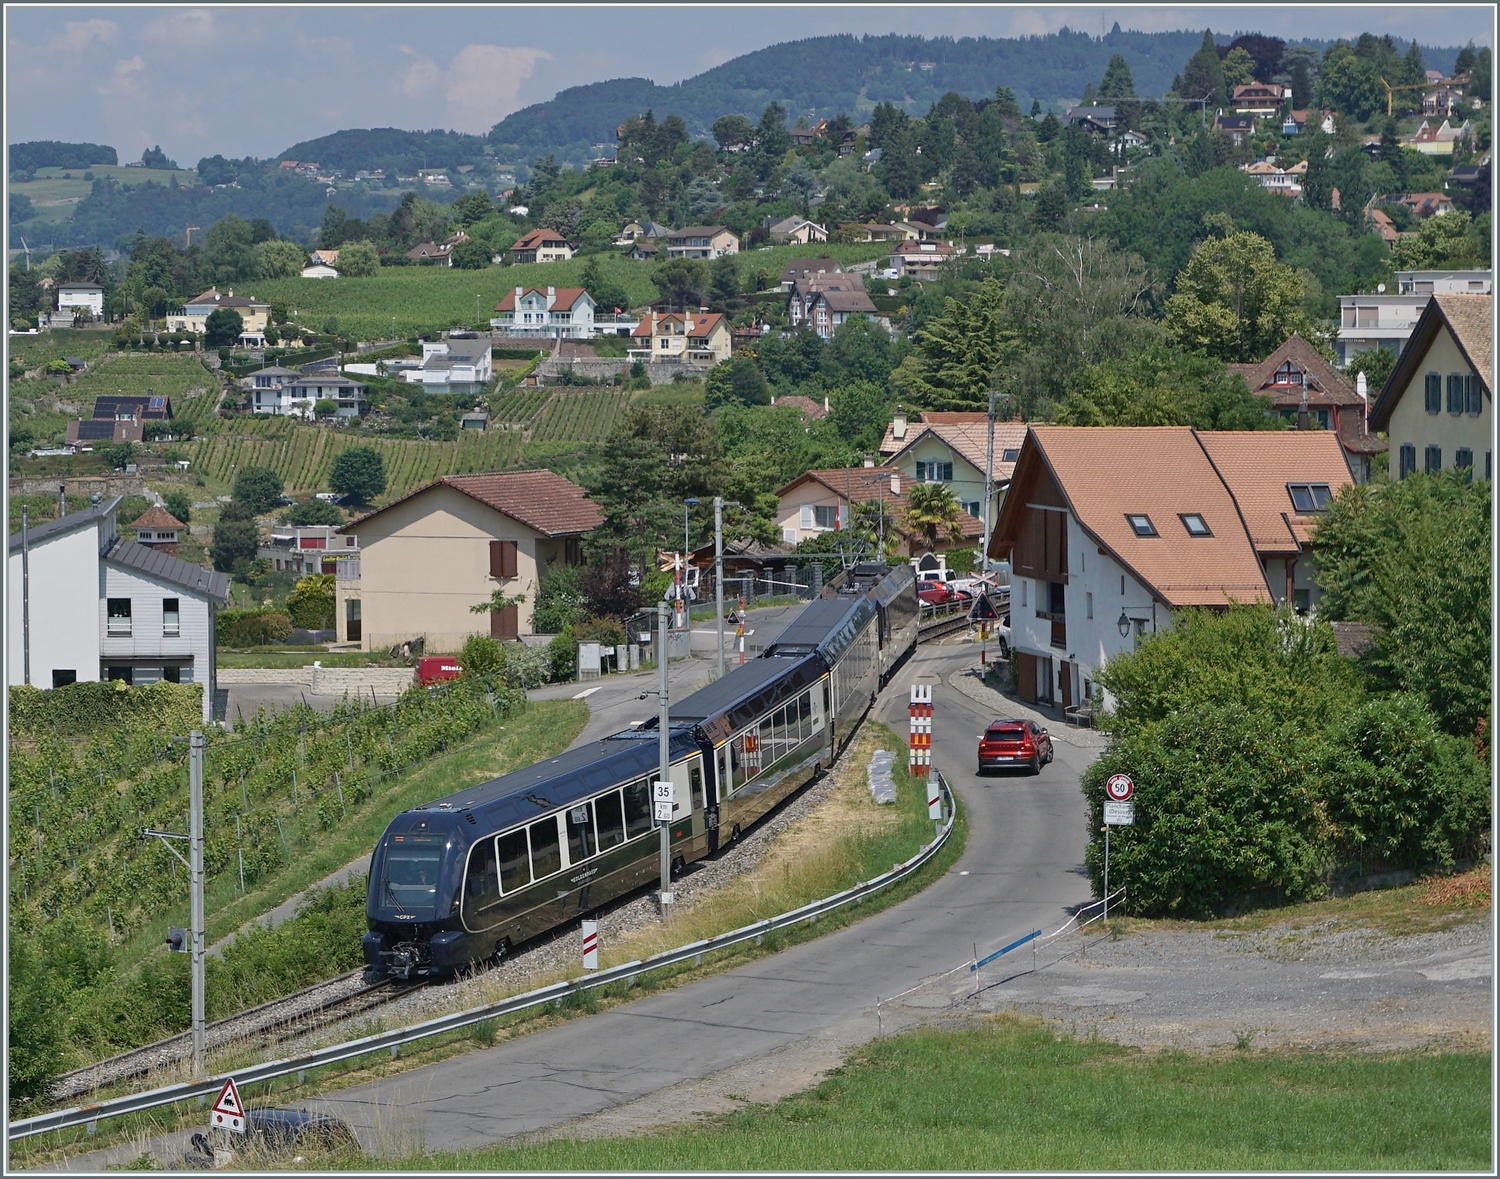 Der GPX 4065 von ZWEISIMMEN nach Montreux bei Planchamp. Entgegen der Werbung der MOB mussten die Reisenden von Interlaken in Zweisimmen umsteigen, eine Tatsache, welche im Fahrplan mehr als geschickt versteckt wird. Der Zug führt interessanter Weise nur drei Wagen, der Steuerwagen Seite Zweisimen fehlt und sorgt somit für ein sehr gefälliges Zugsbild. 

16. Juni 2023 